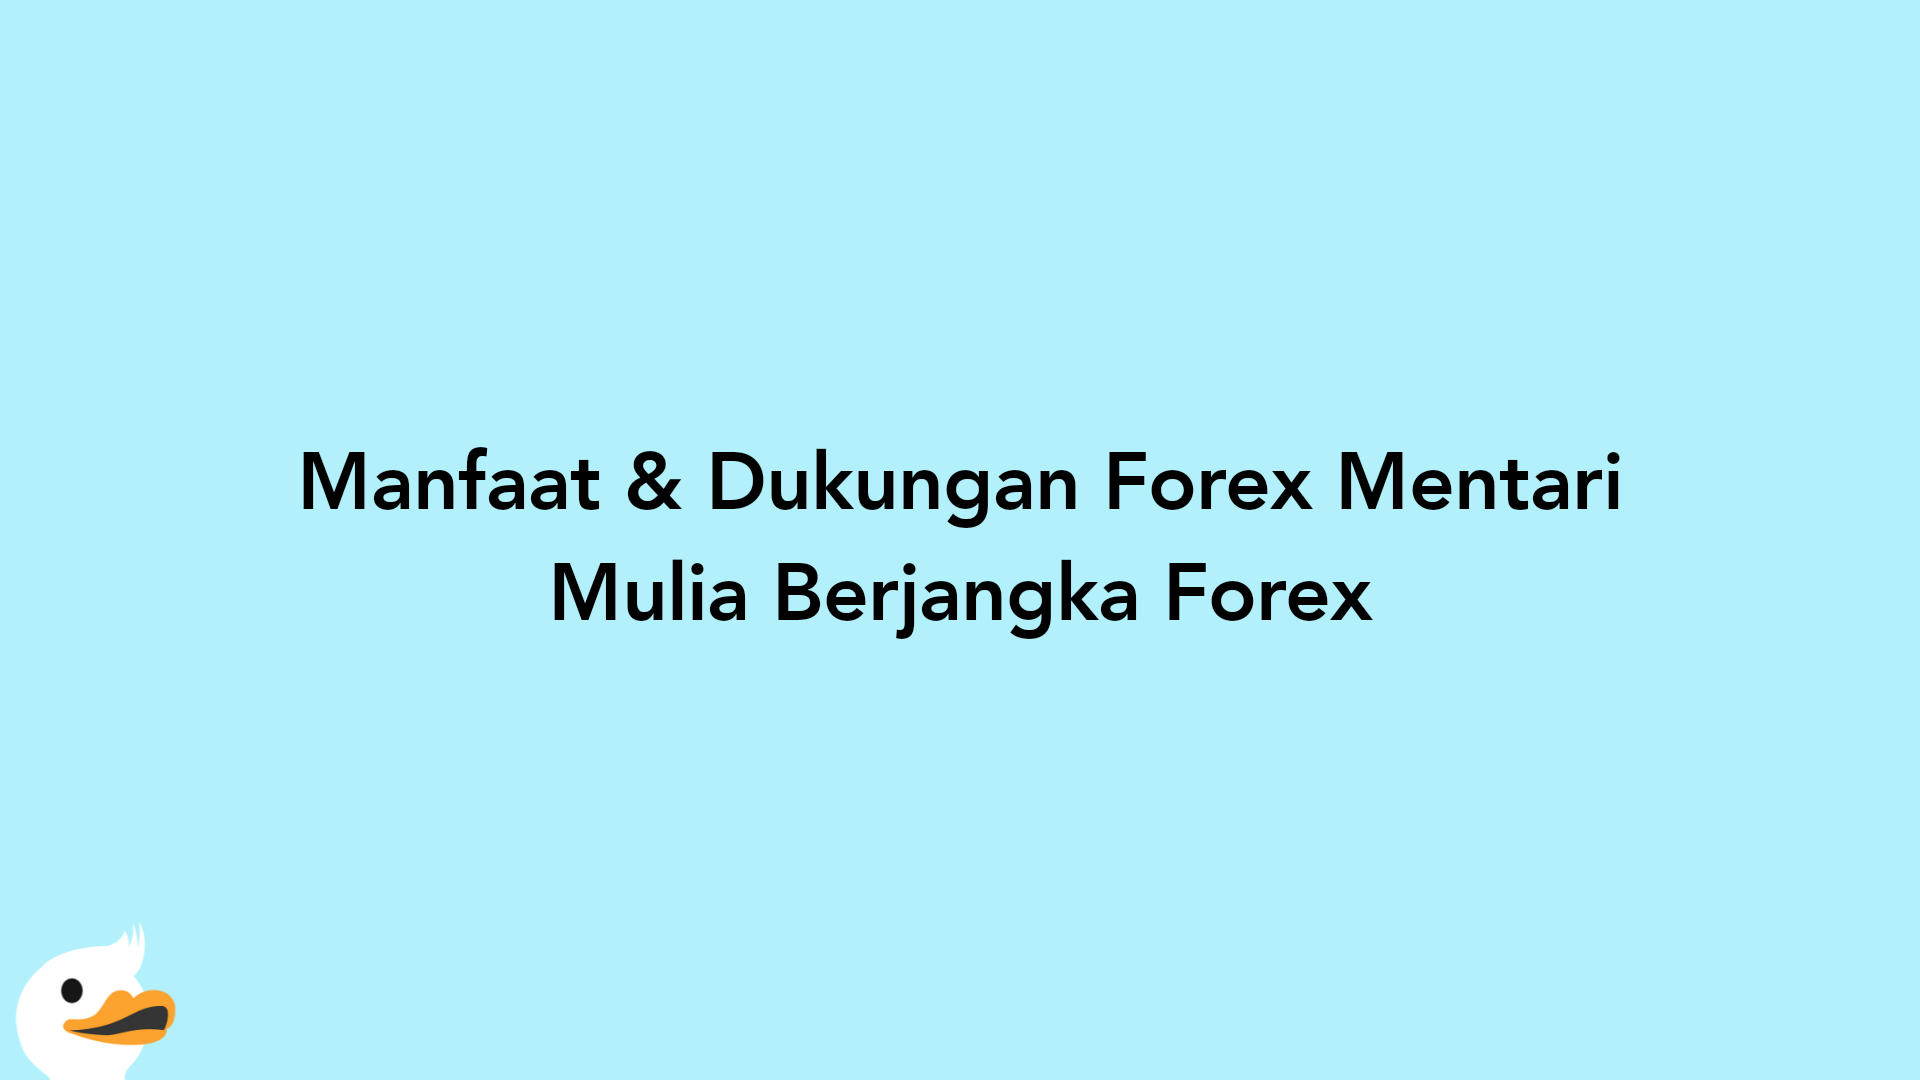 Manfaat & Dukungan Forex Mentari Mulia Berjangka Forex